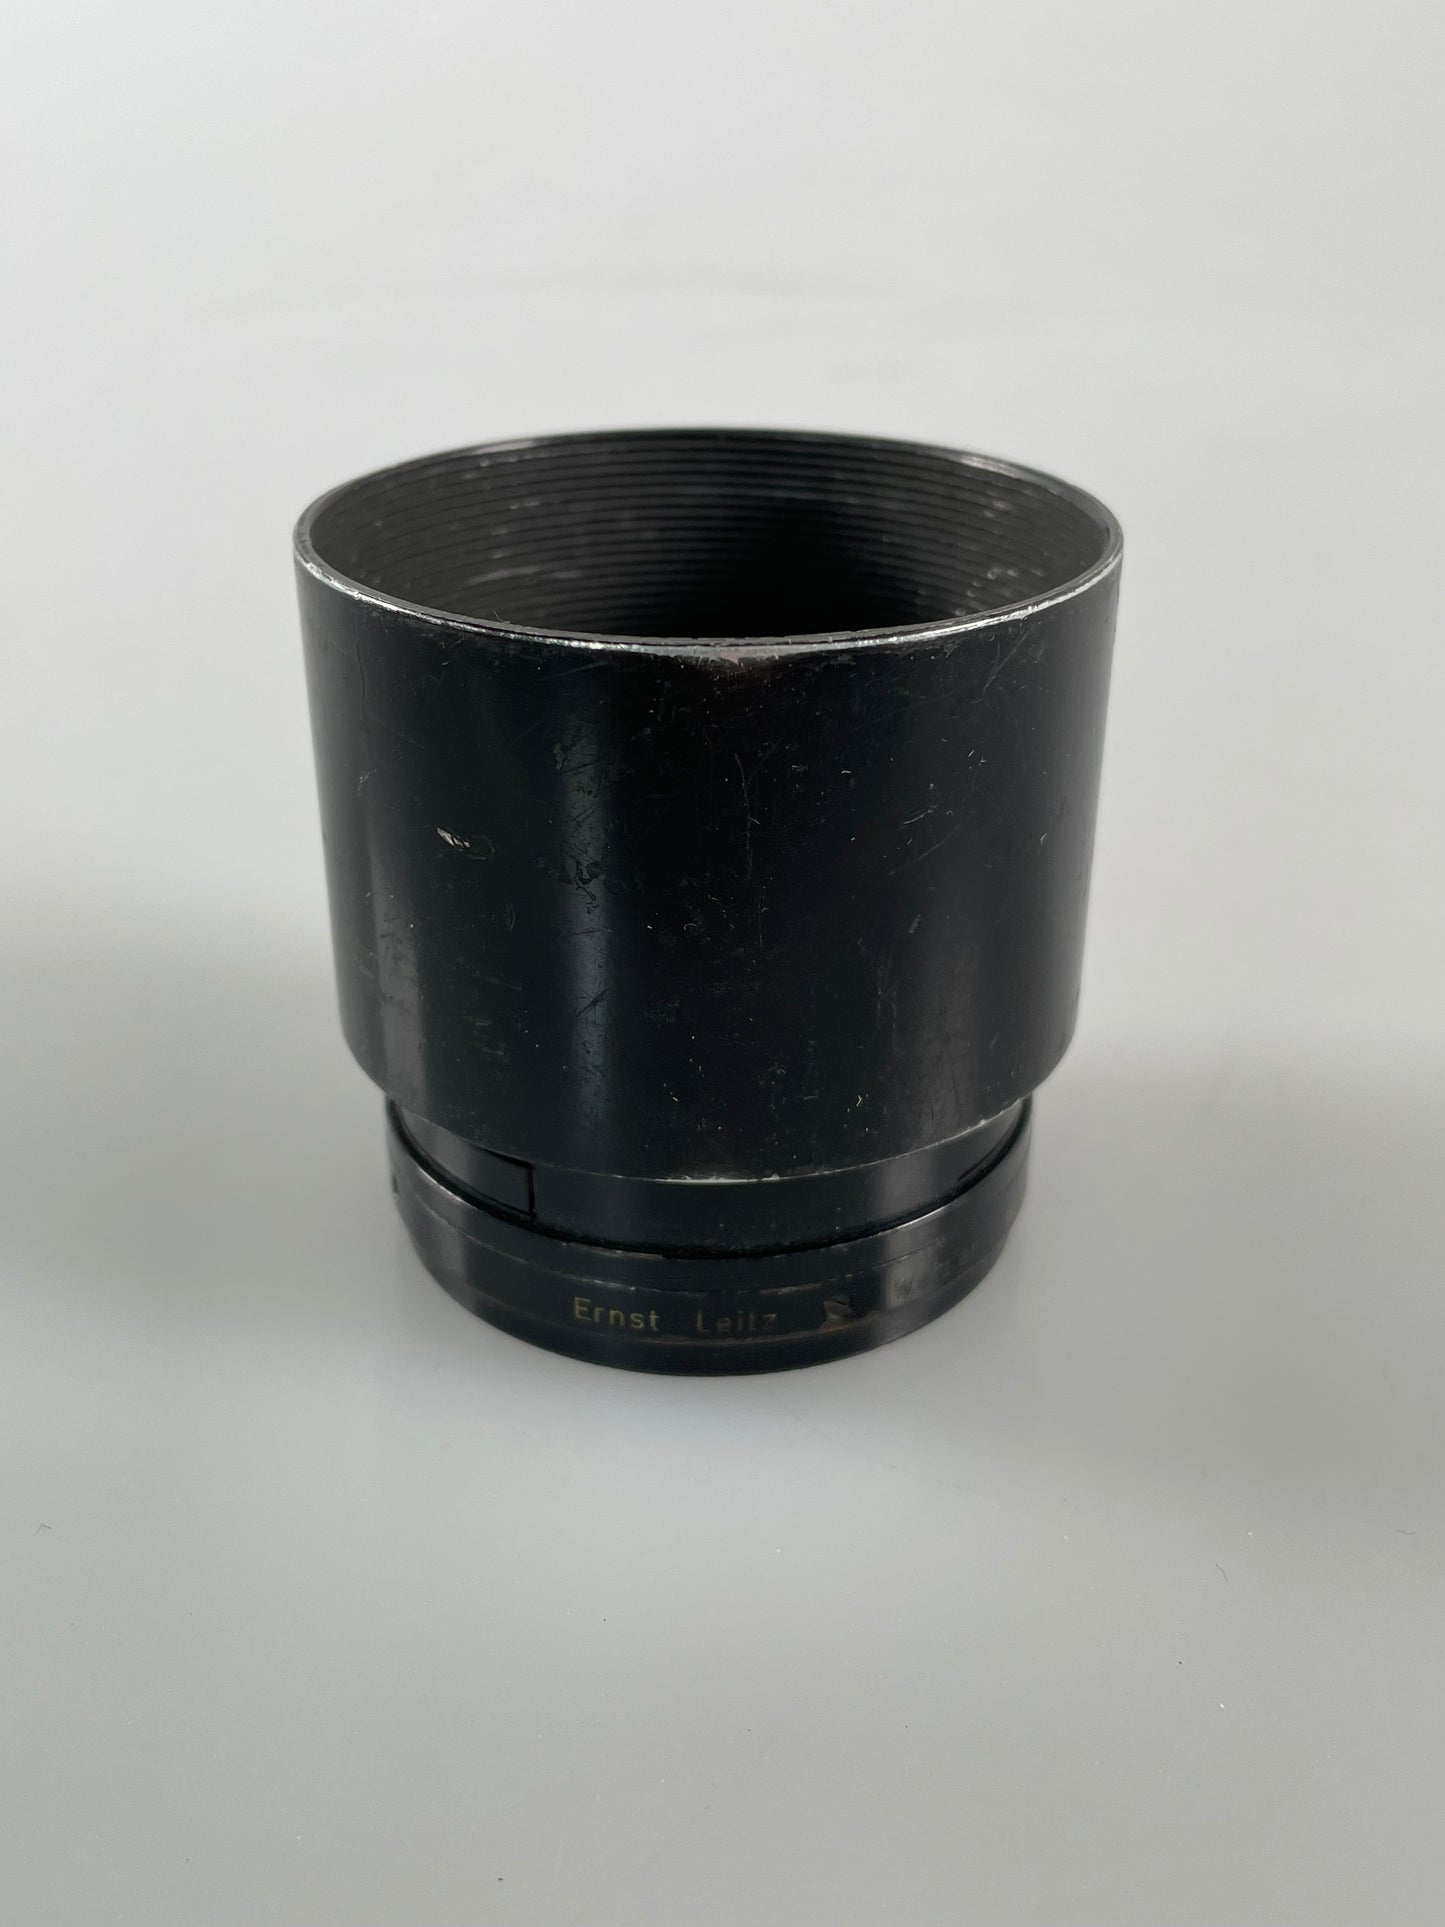 Leica Lens Hood Shade for 20cm f4.5 Telyt Visoflex Lens